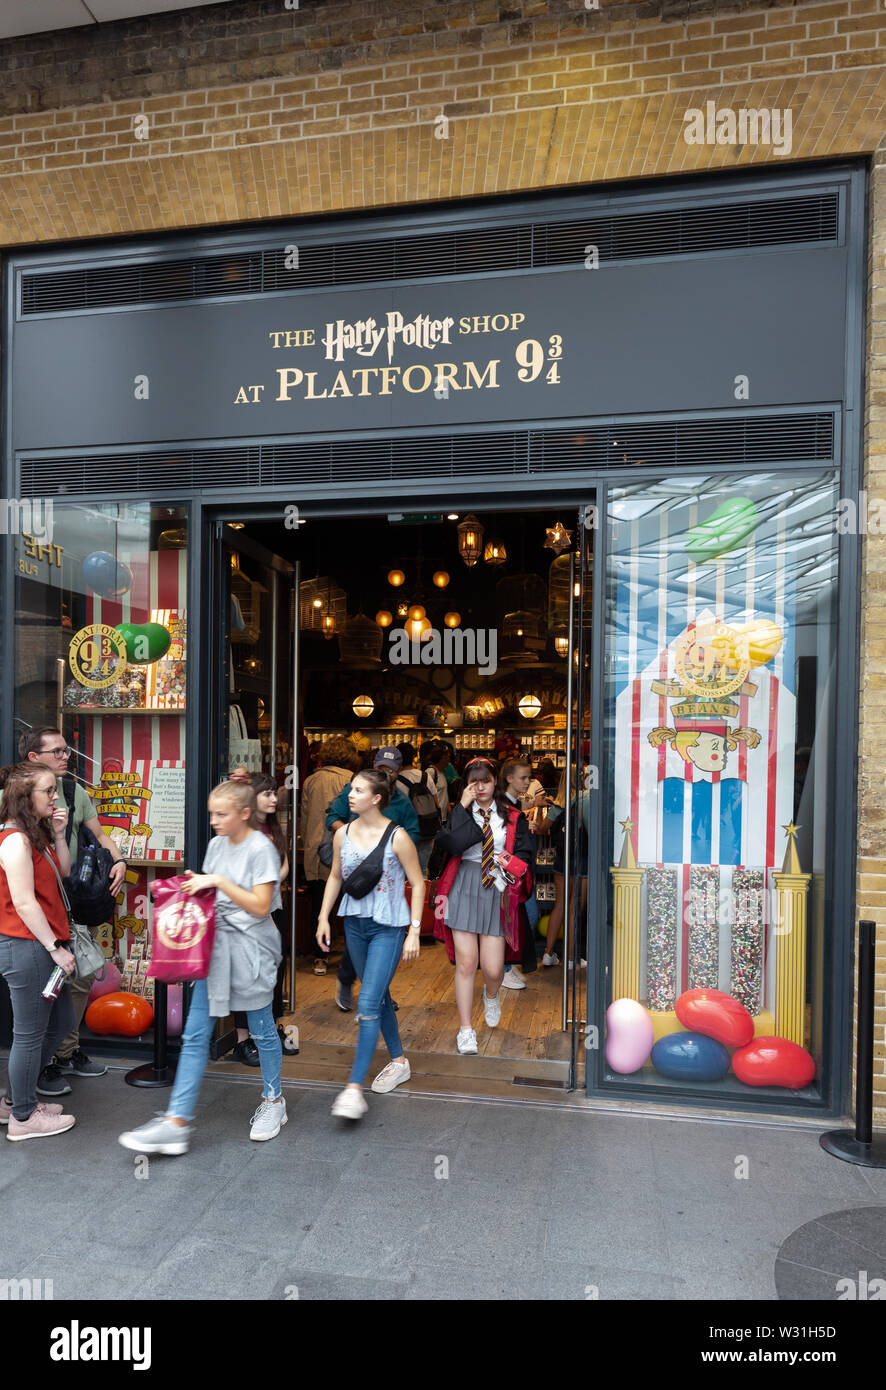 La gare de Kings Cross boutique Harry Potter à la plate-forme 9 3/4, la gare de Kings Cross, London UK Banque D'Images